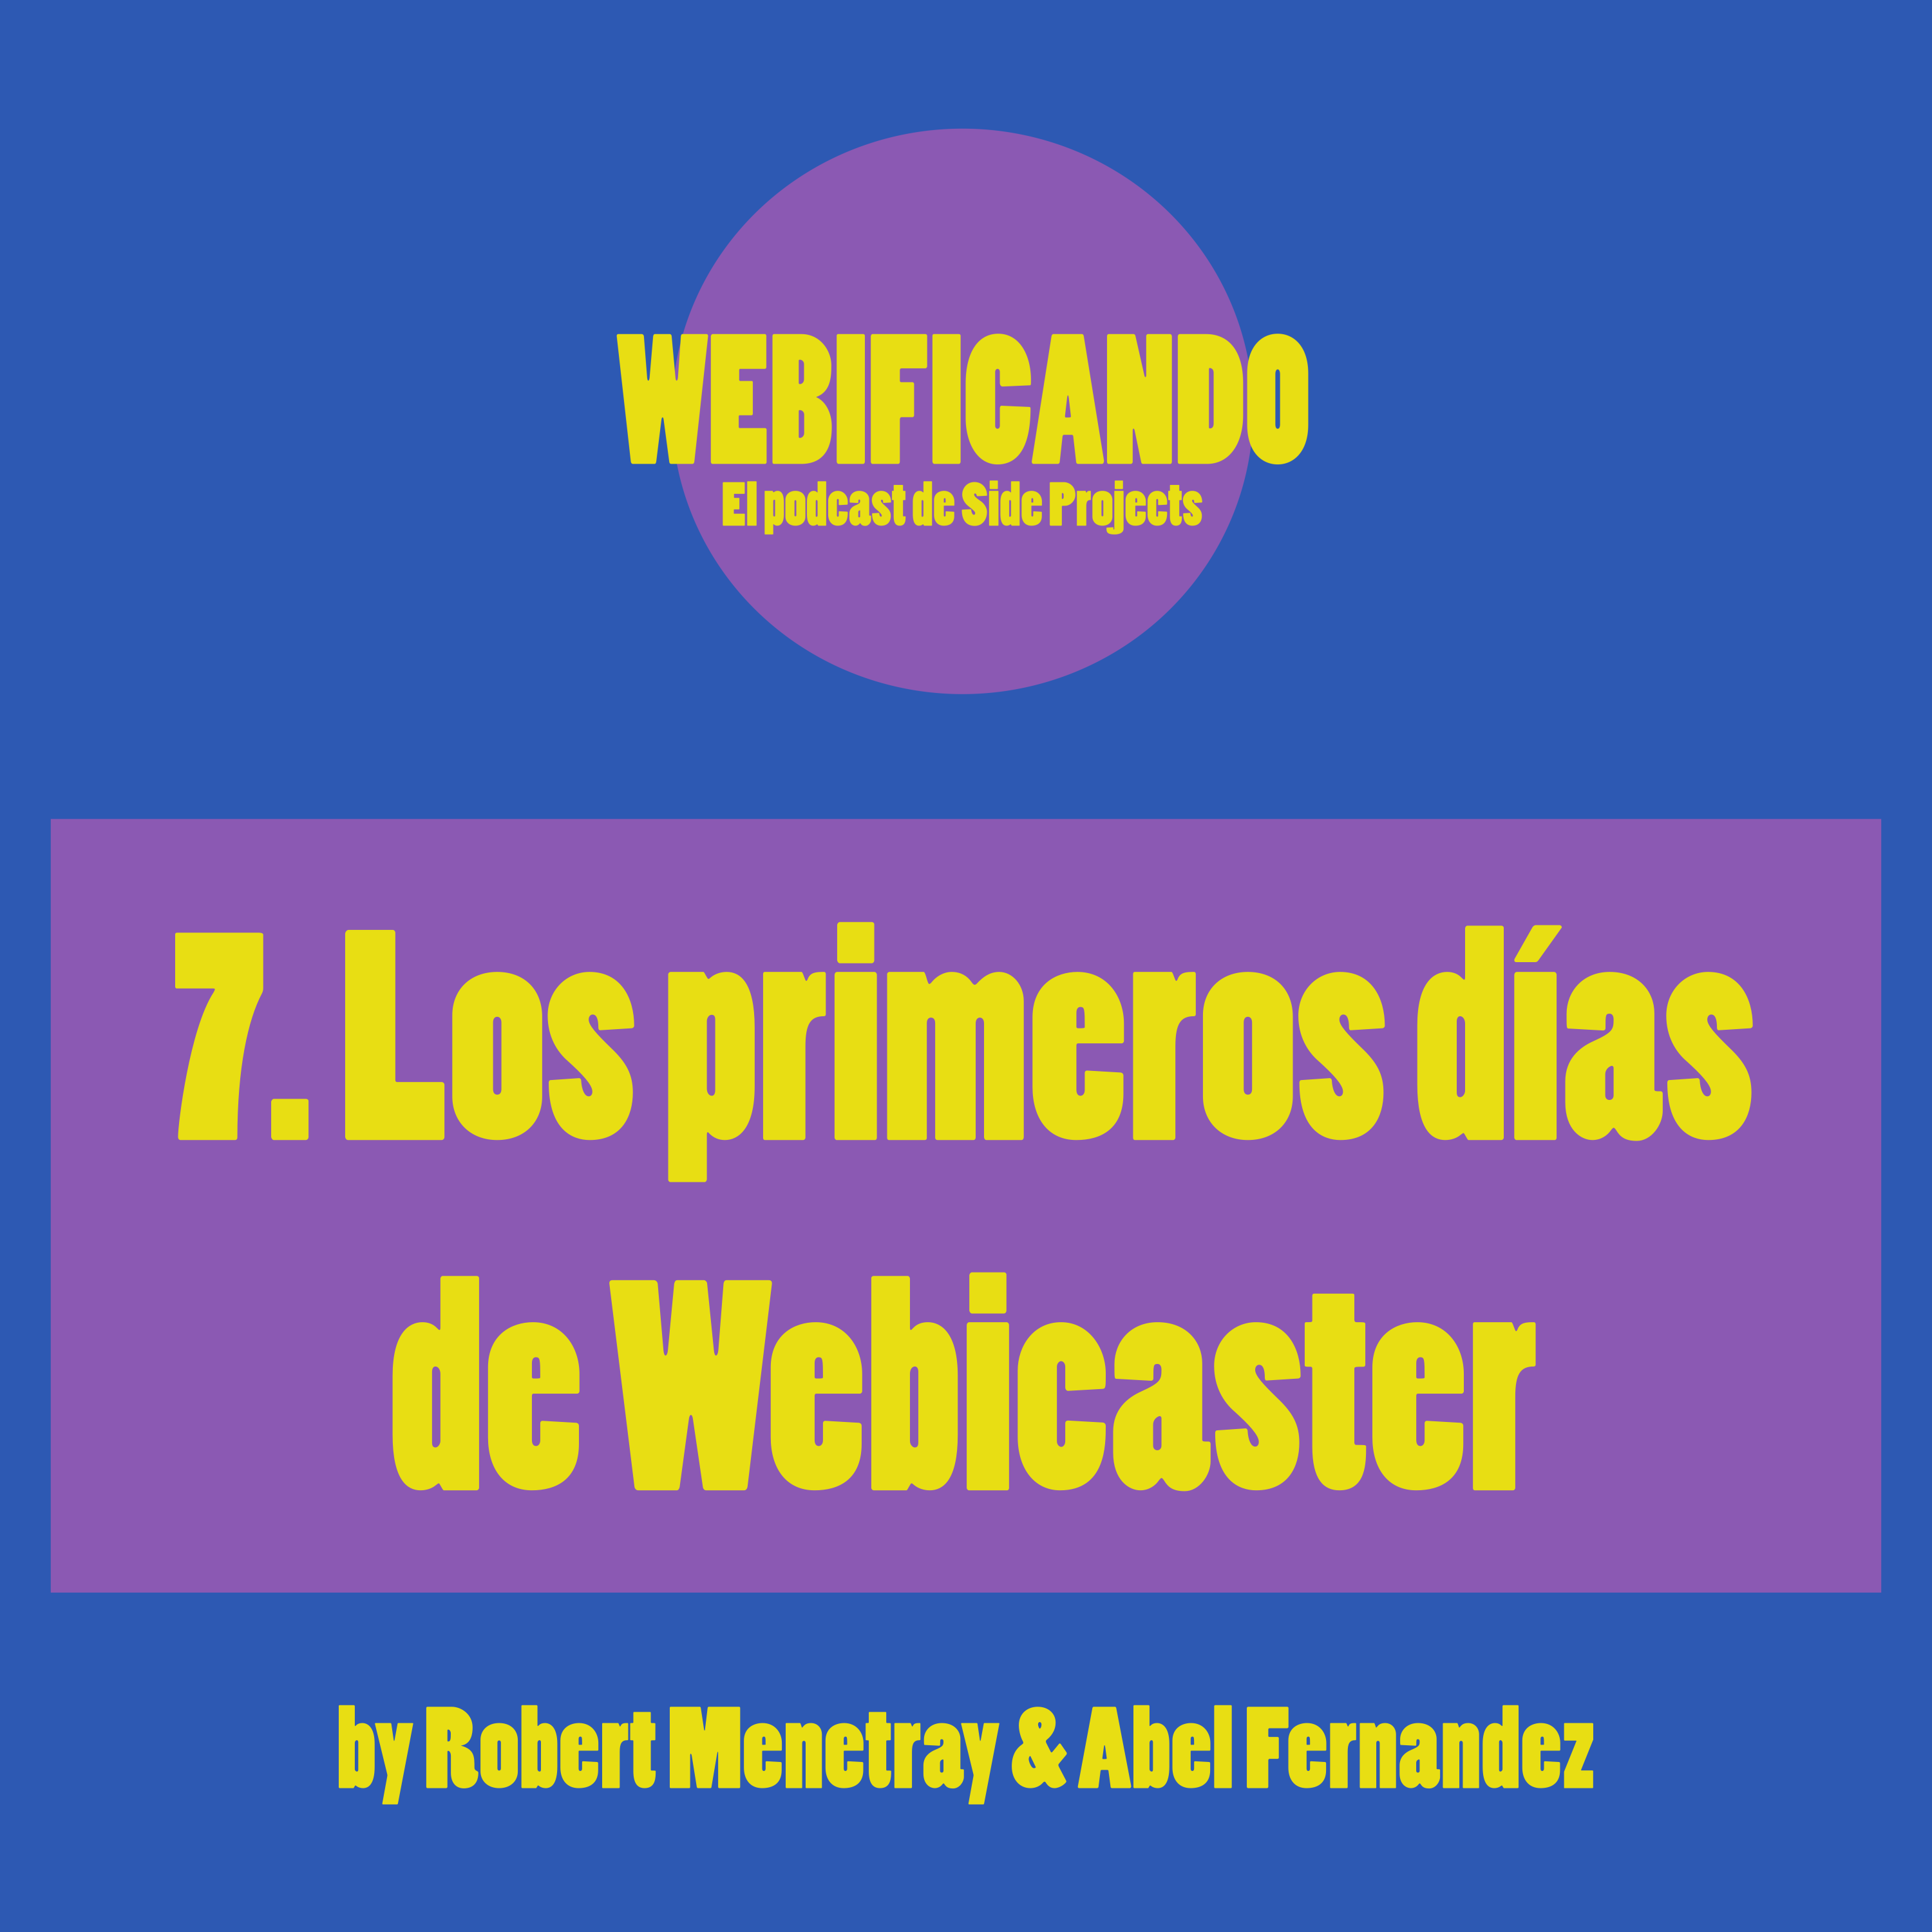 7. Los primeros días de Webicaster